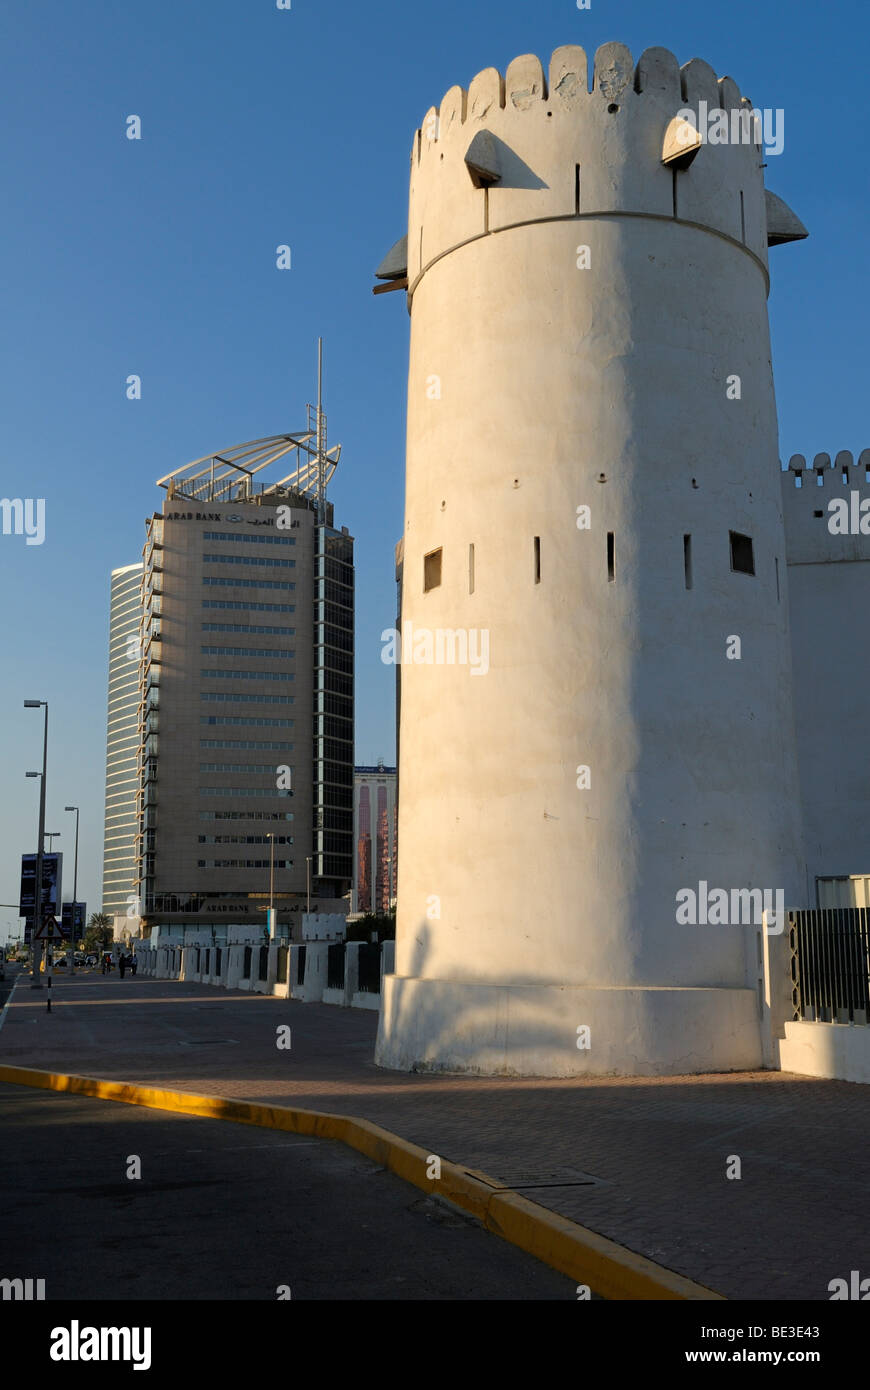 Historischen Al Hosn Fort und moderne mehrstöckige Gebäude im Zentrum von Abu Dhabi City, Arabische Emirat Abu Dhabi, Vereinigte Arabische Emirate, Stockfoto